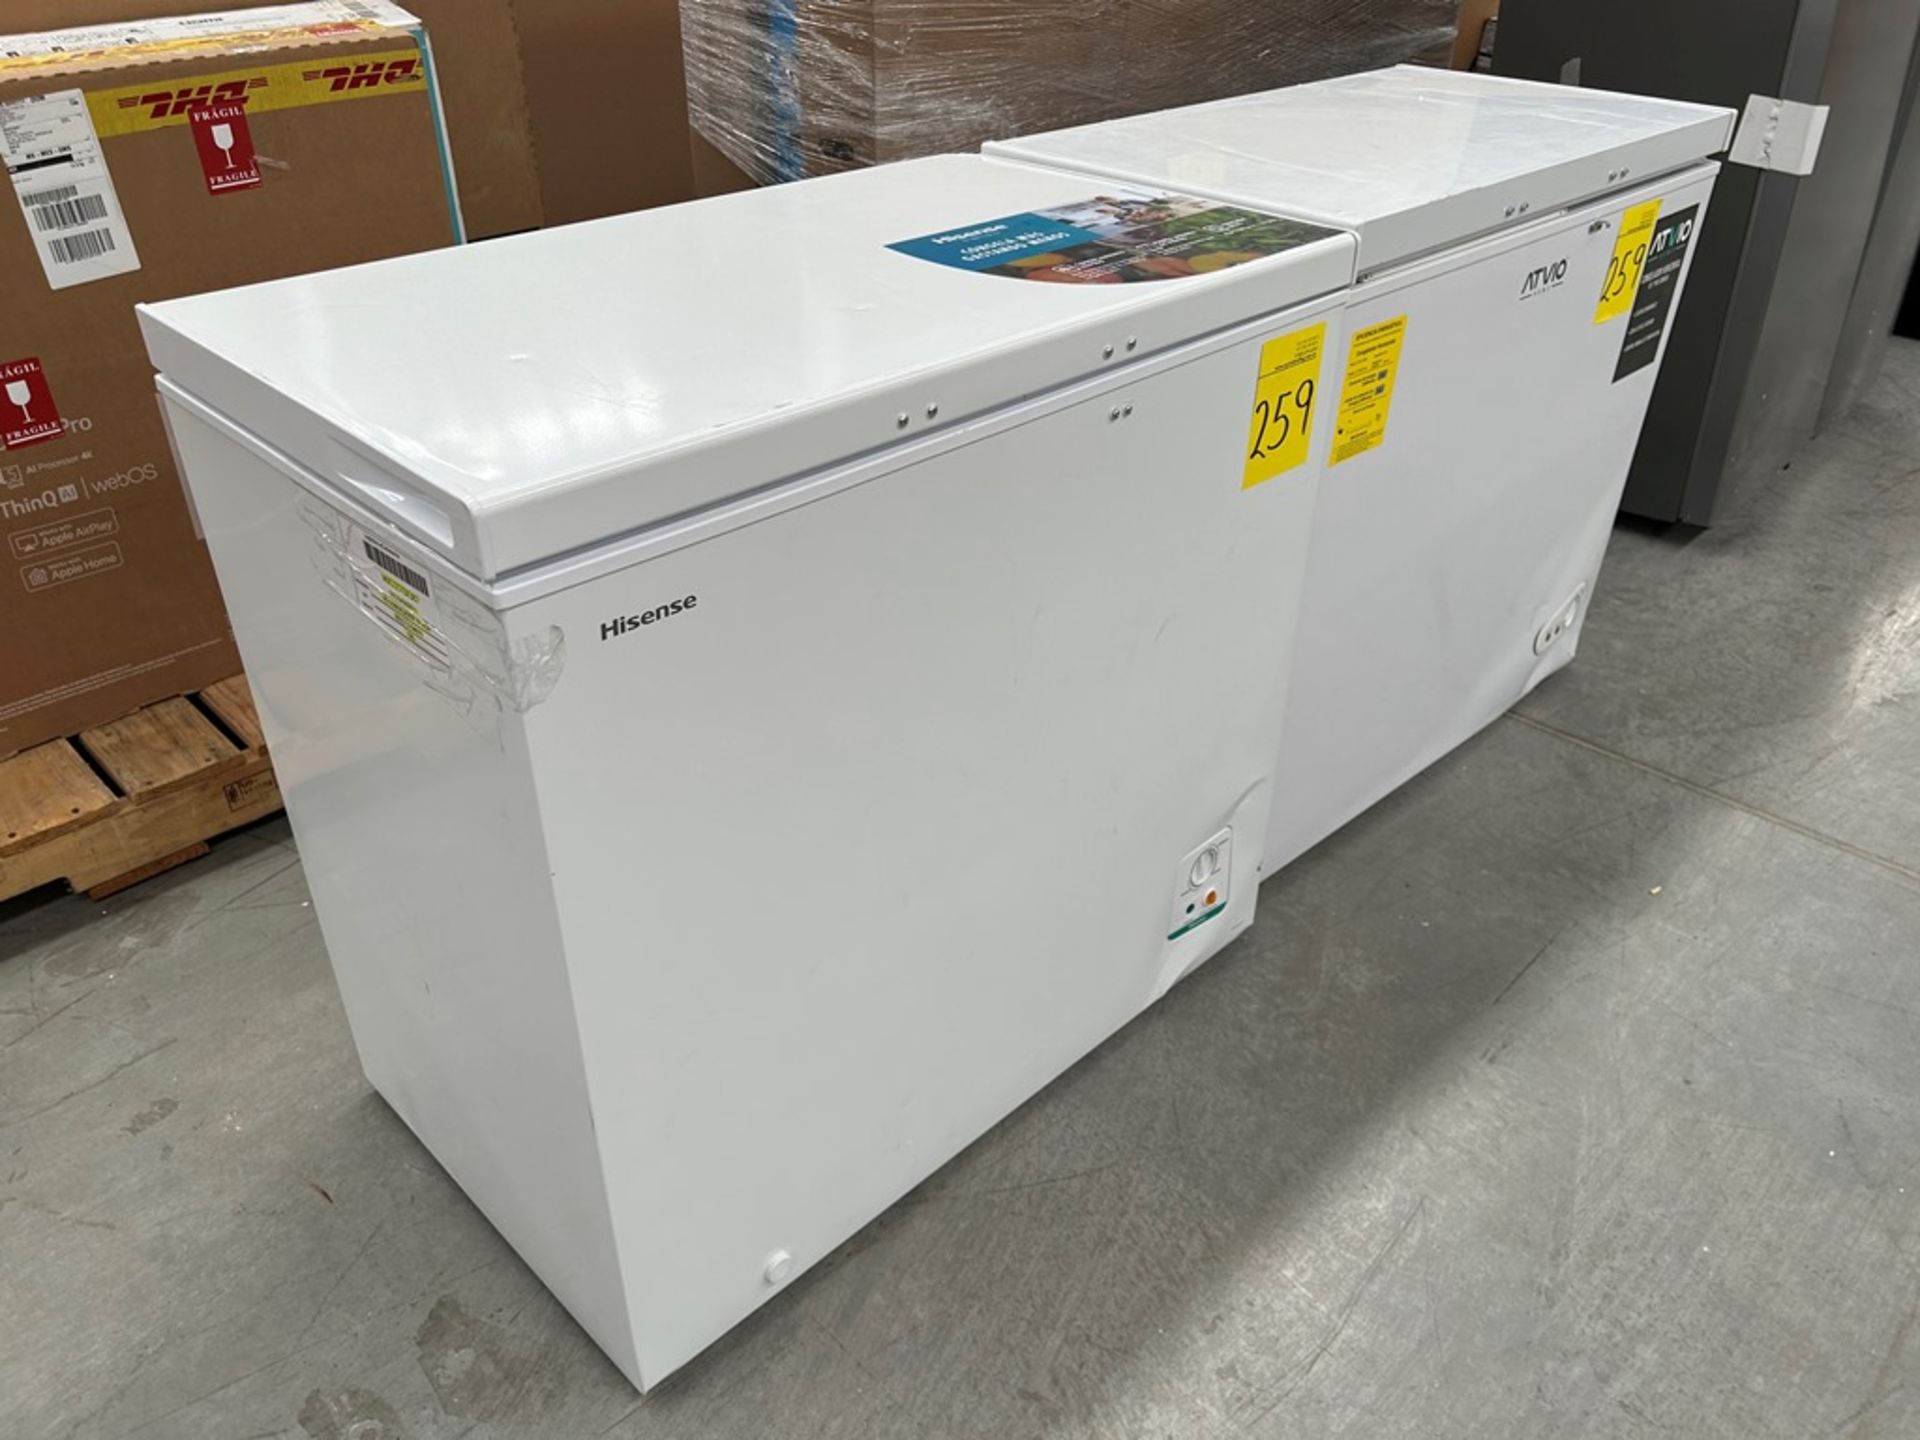 2 congeladores contiene: 1 congelador Marca HISENSE, Modelo FC70D6BWX, Color GRIS; 1 congelador Mar - Image 3 of 6